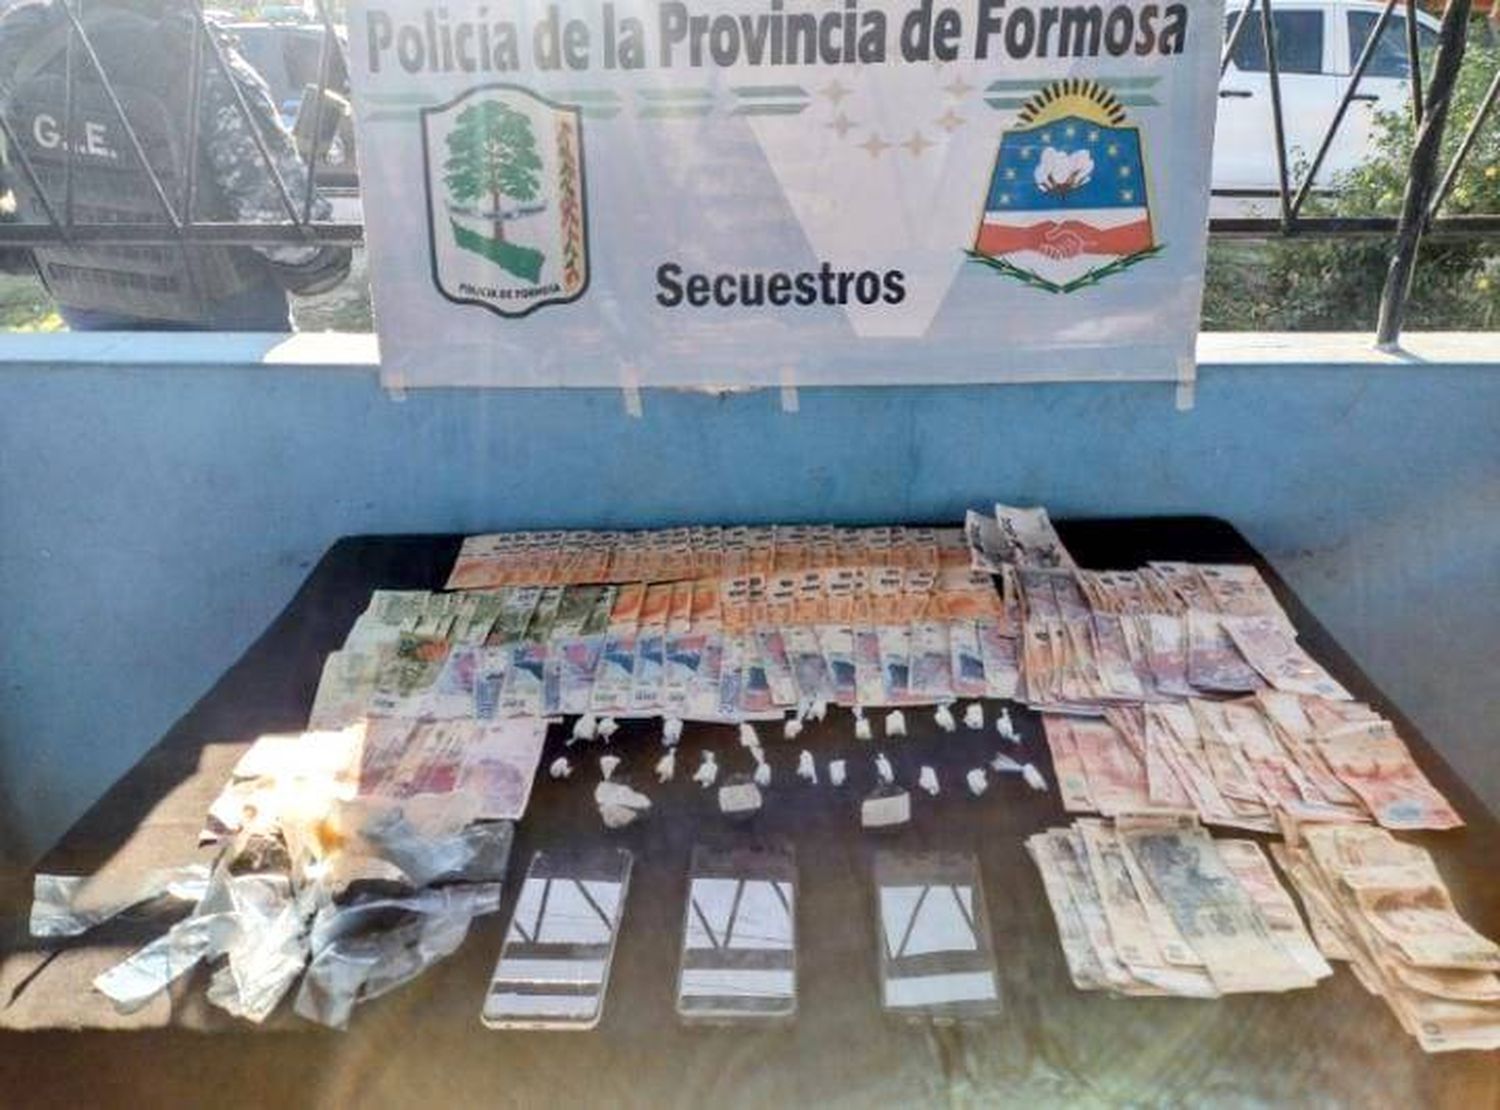 La Policía anuló otro centro de distribución de
drogas en el barrio Itatí 1 y detuvo a un traficante